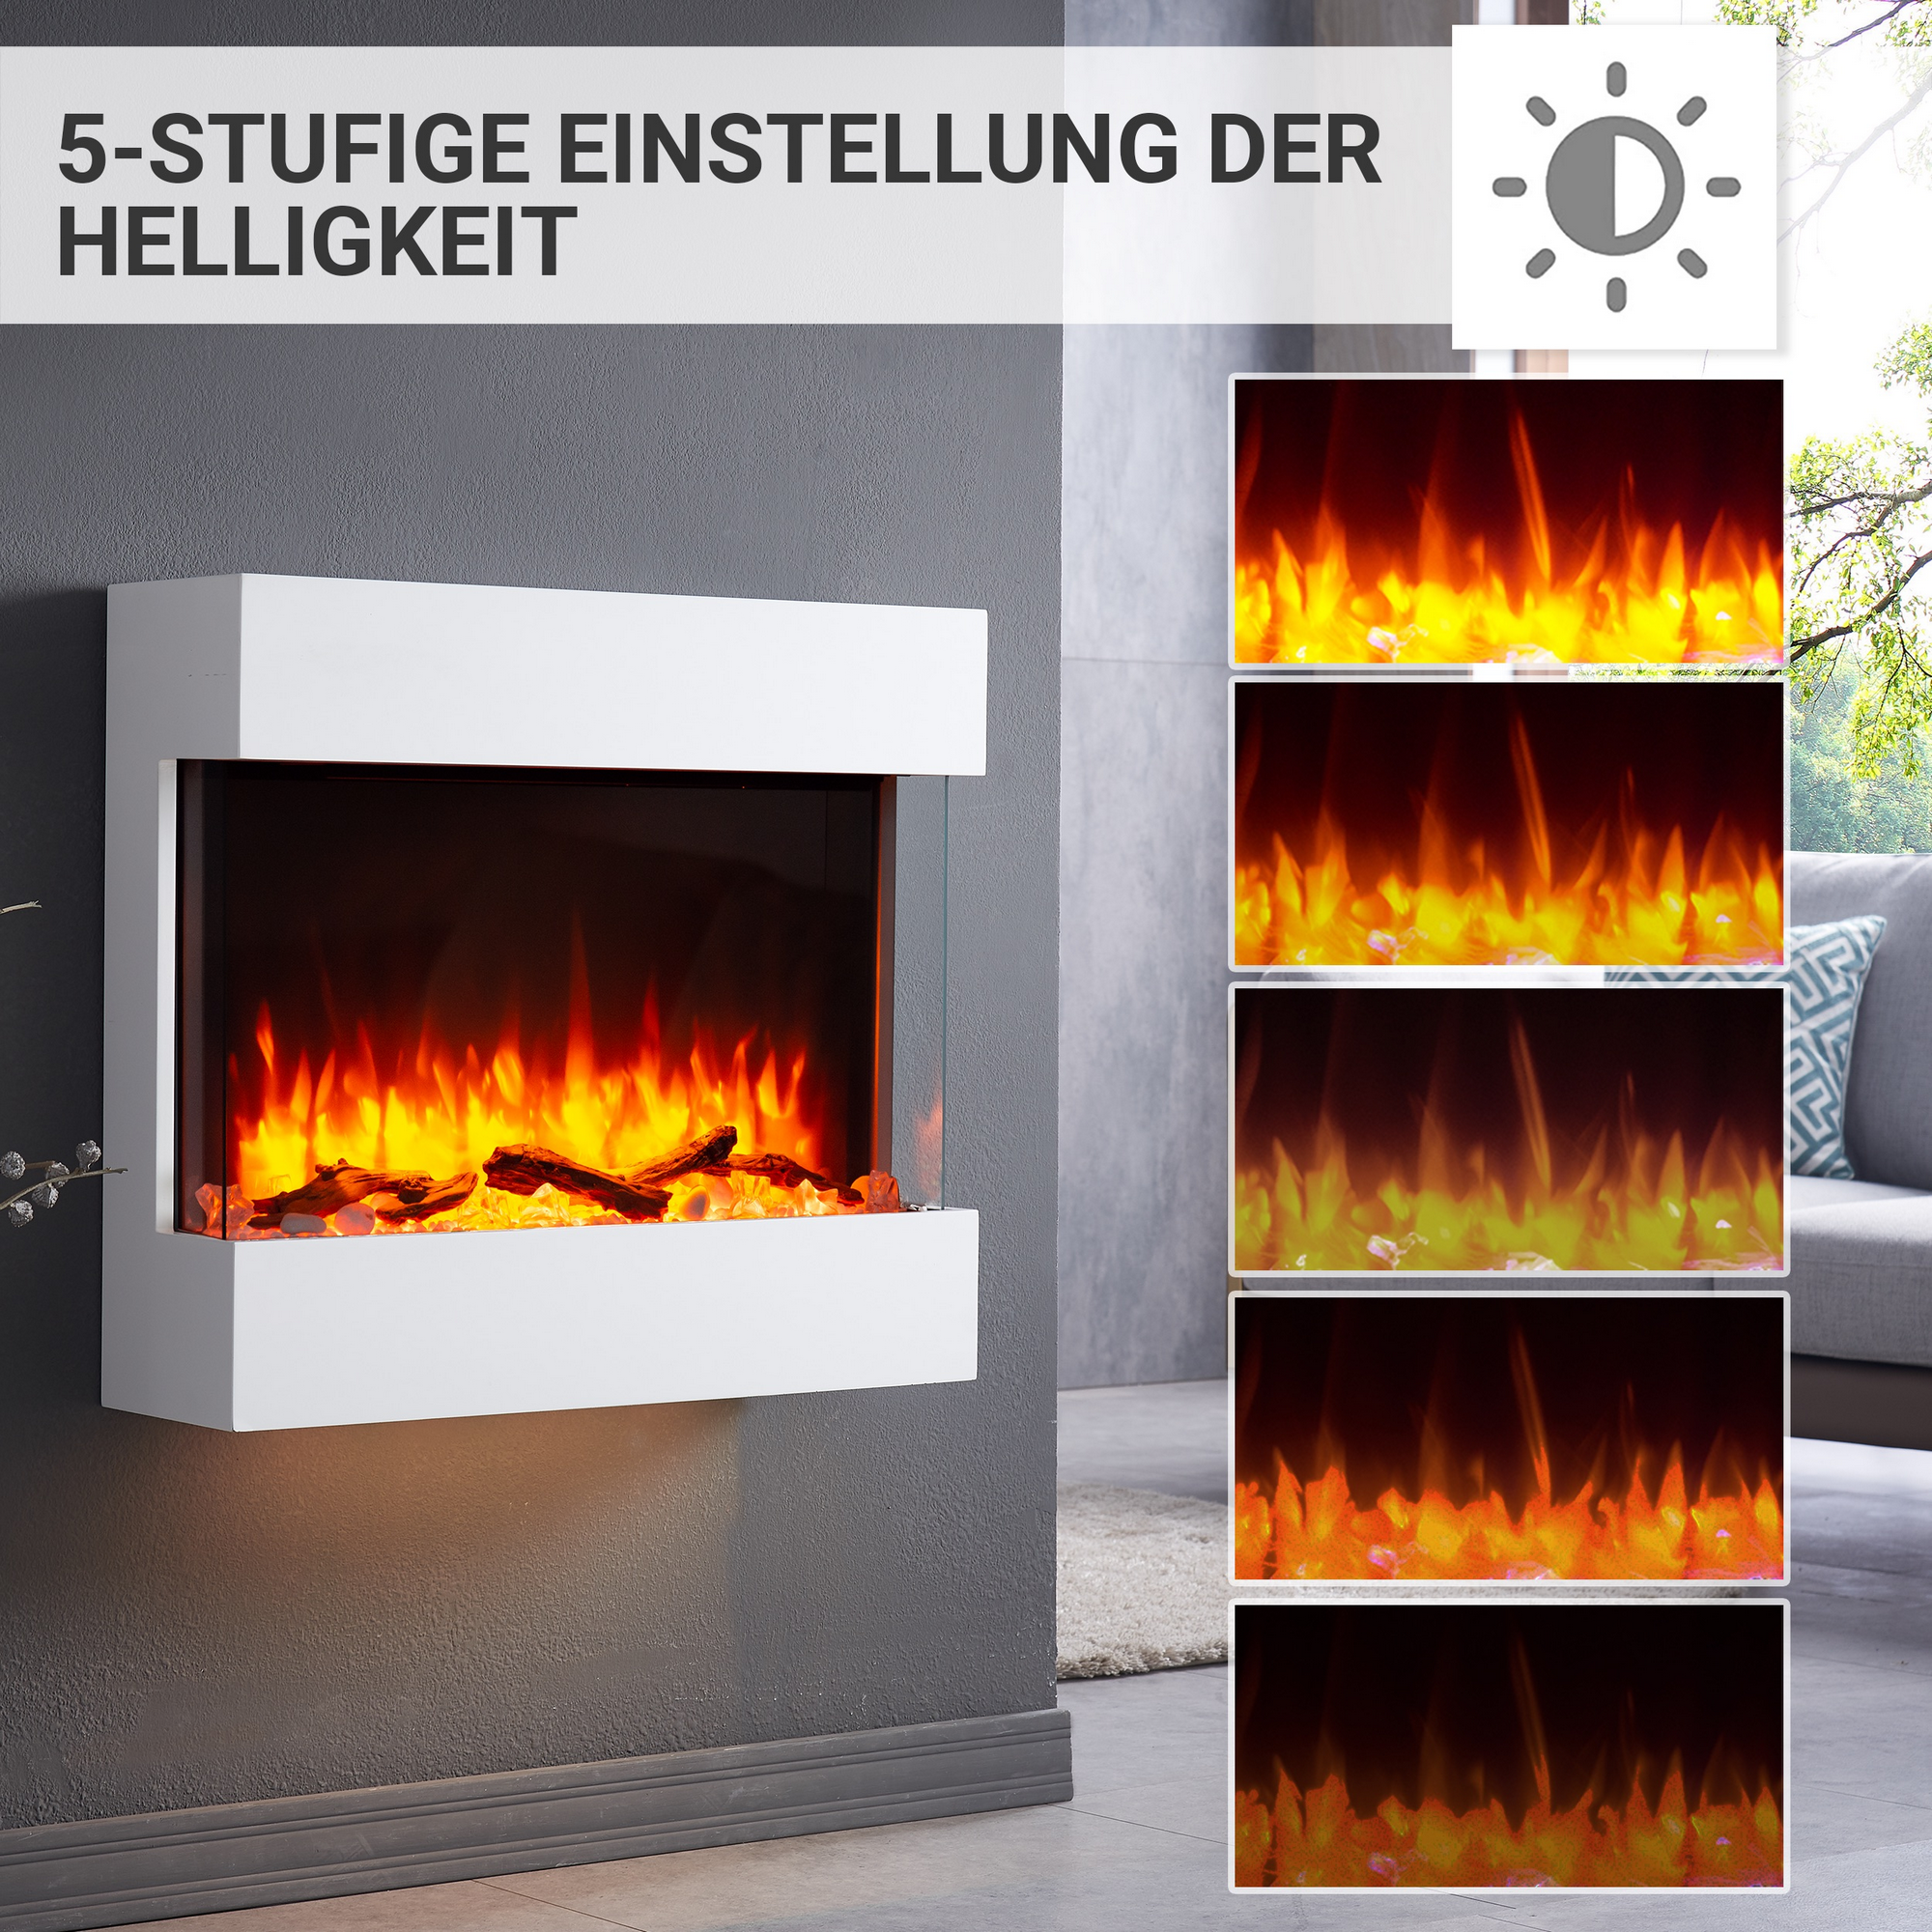 Elektro-Wandkamin 'Alva' weiß 2000 W, 3D-Flammeneffekt Fernbedienung 72,6 x 63,4 x 20 cm + product picture